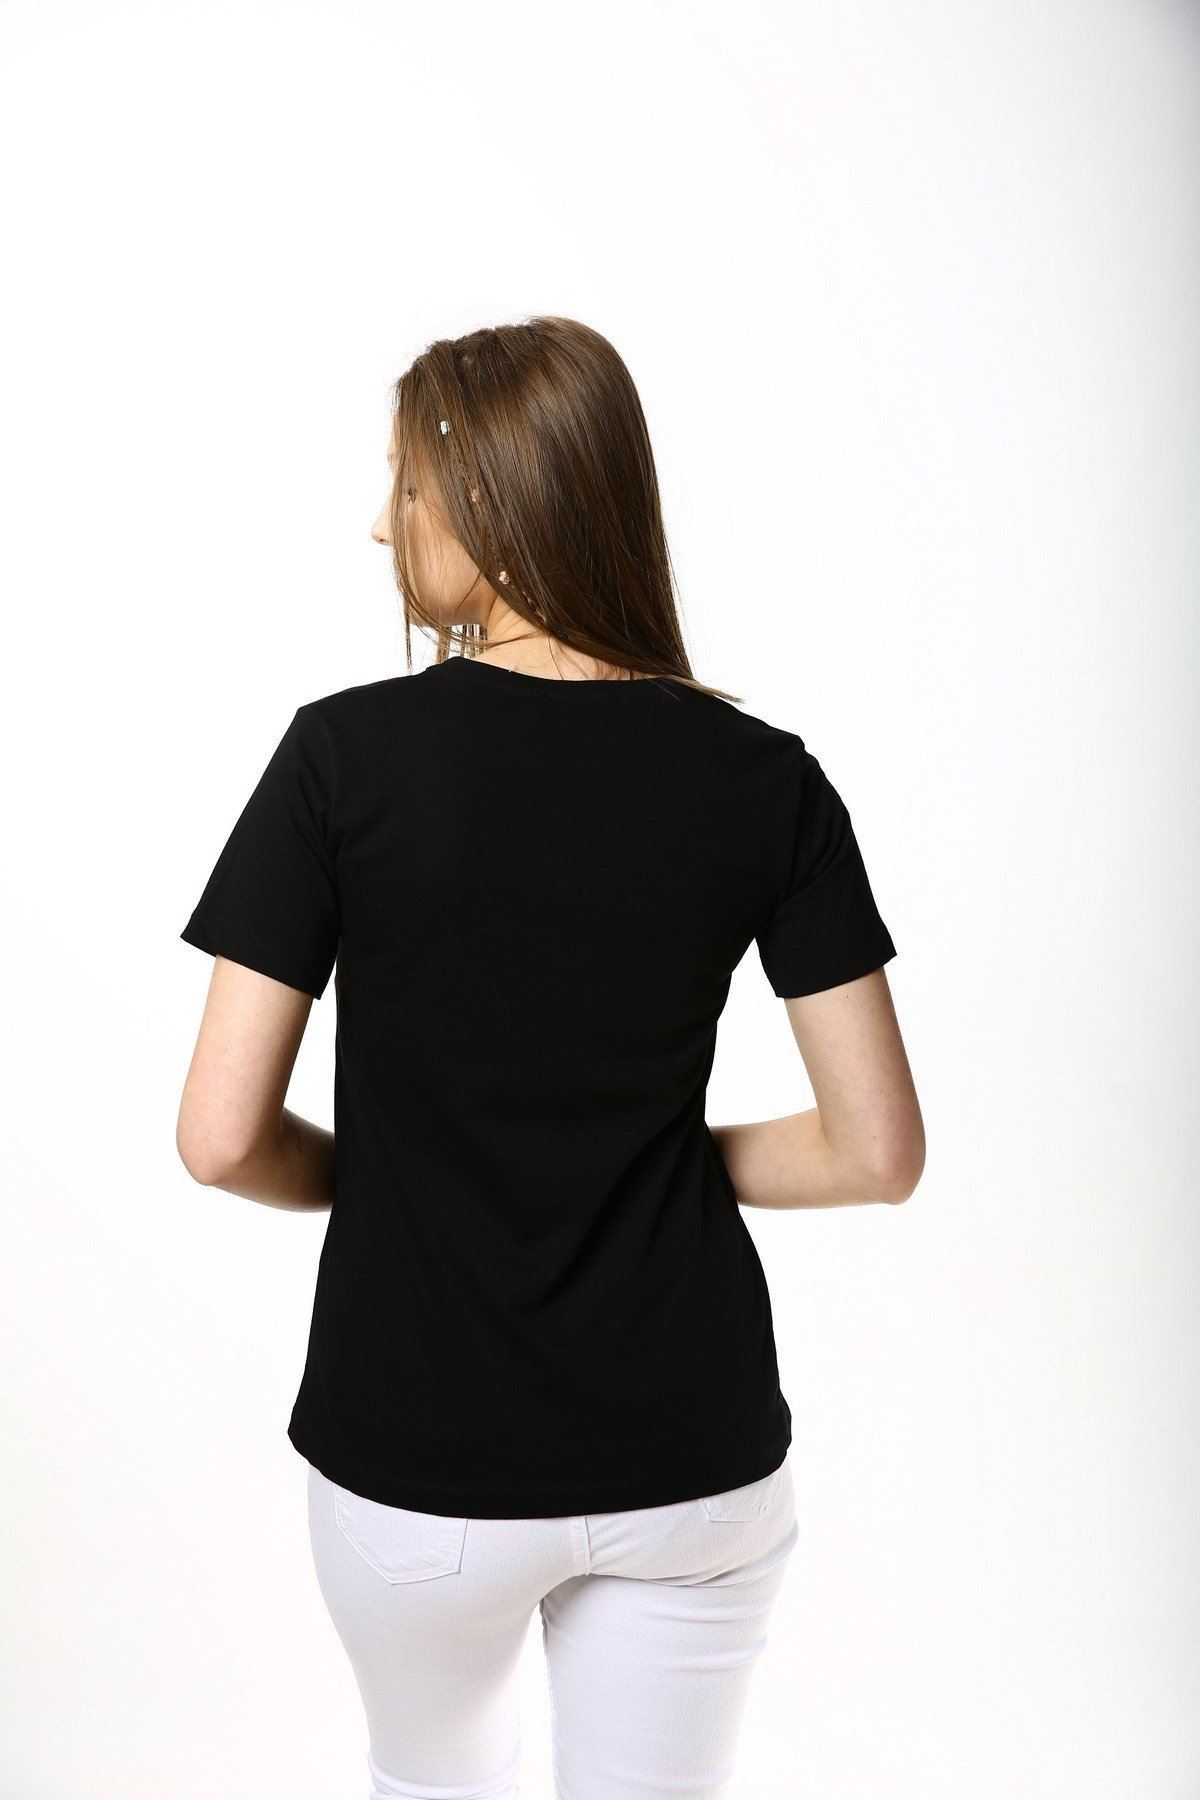 Ön Karakter Baskılı Gözlüğü Taş İşlemeli Baskılı T-shirt-Siyah